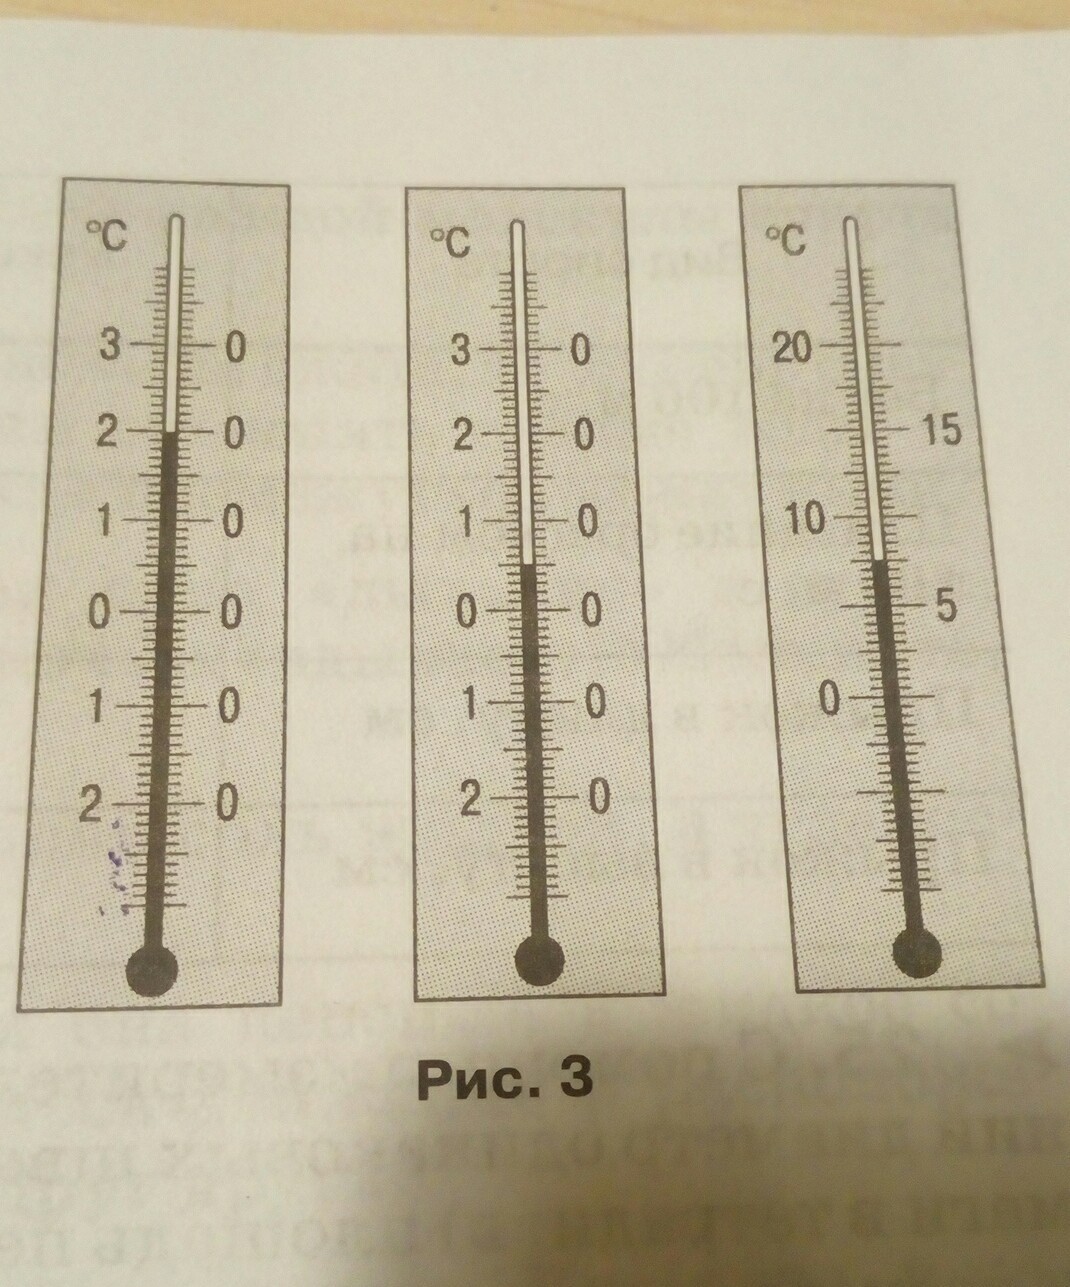  цену деления шкалы каждого из термометров, изображенных на .